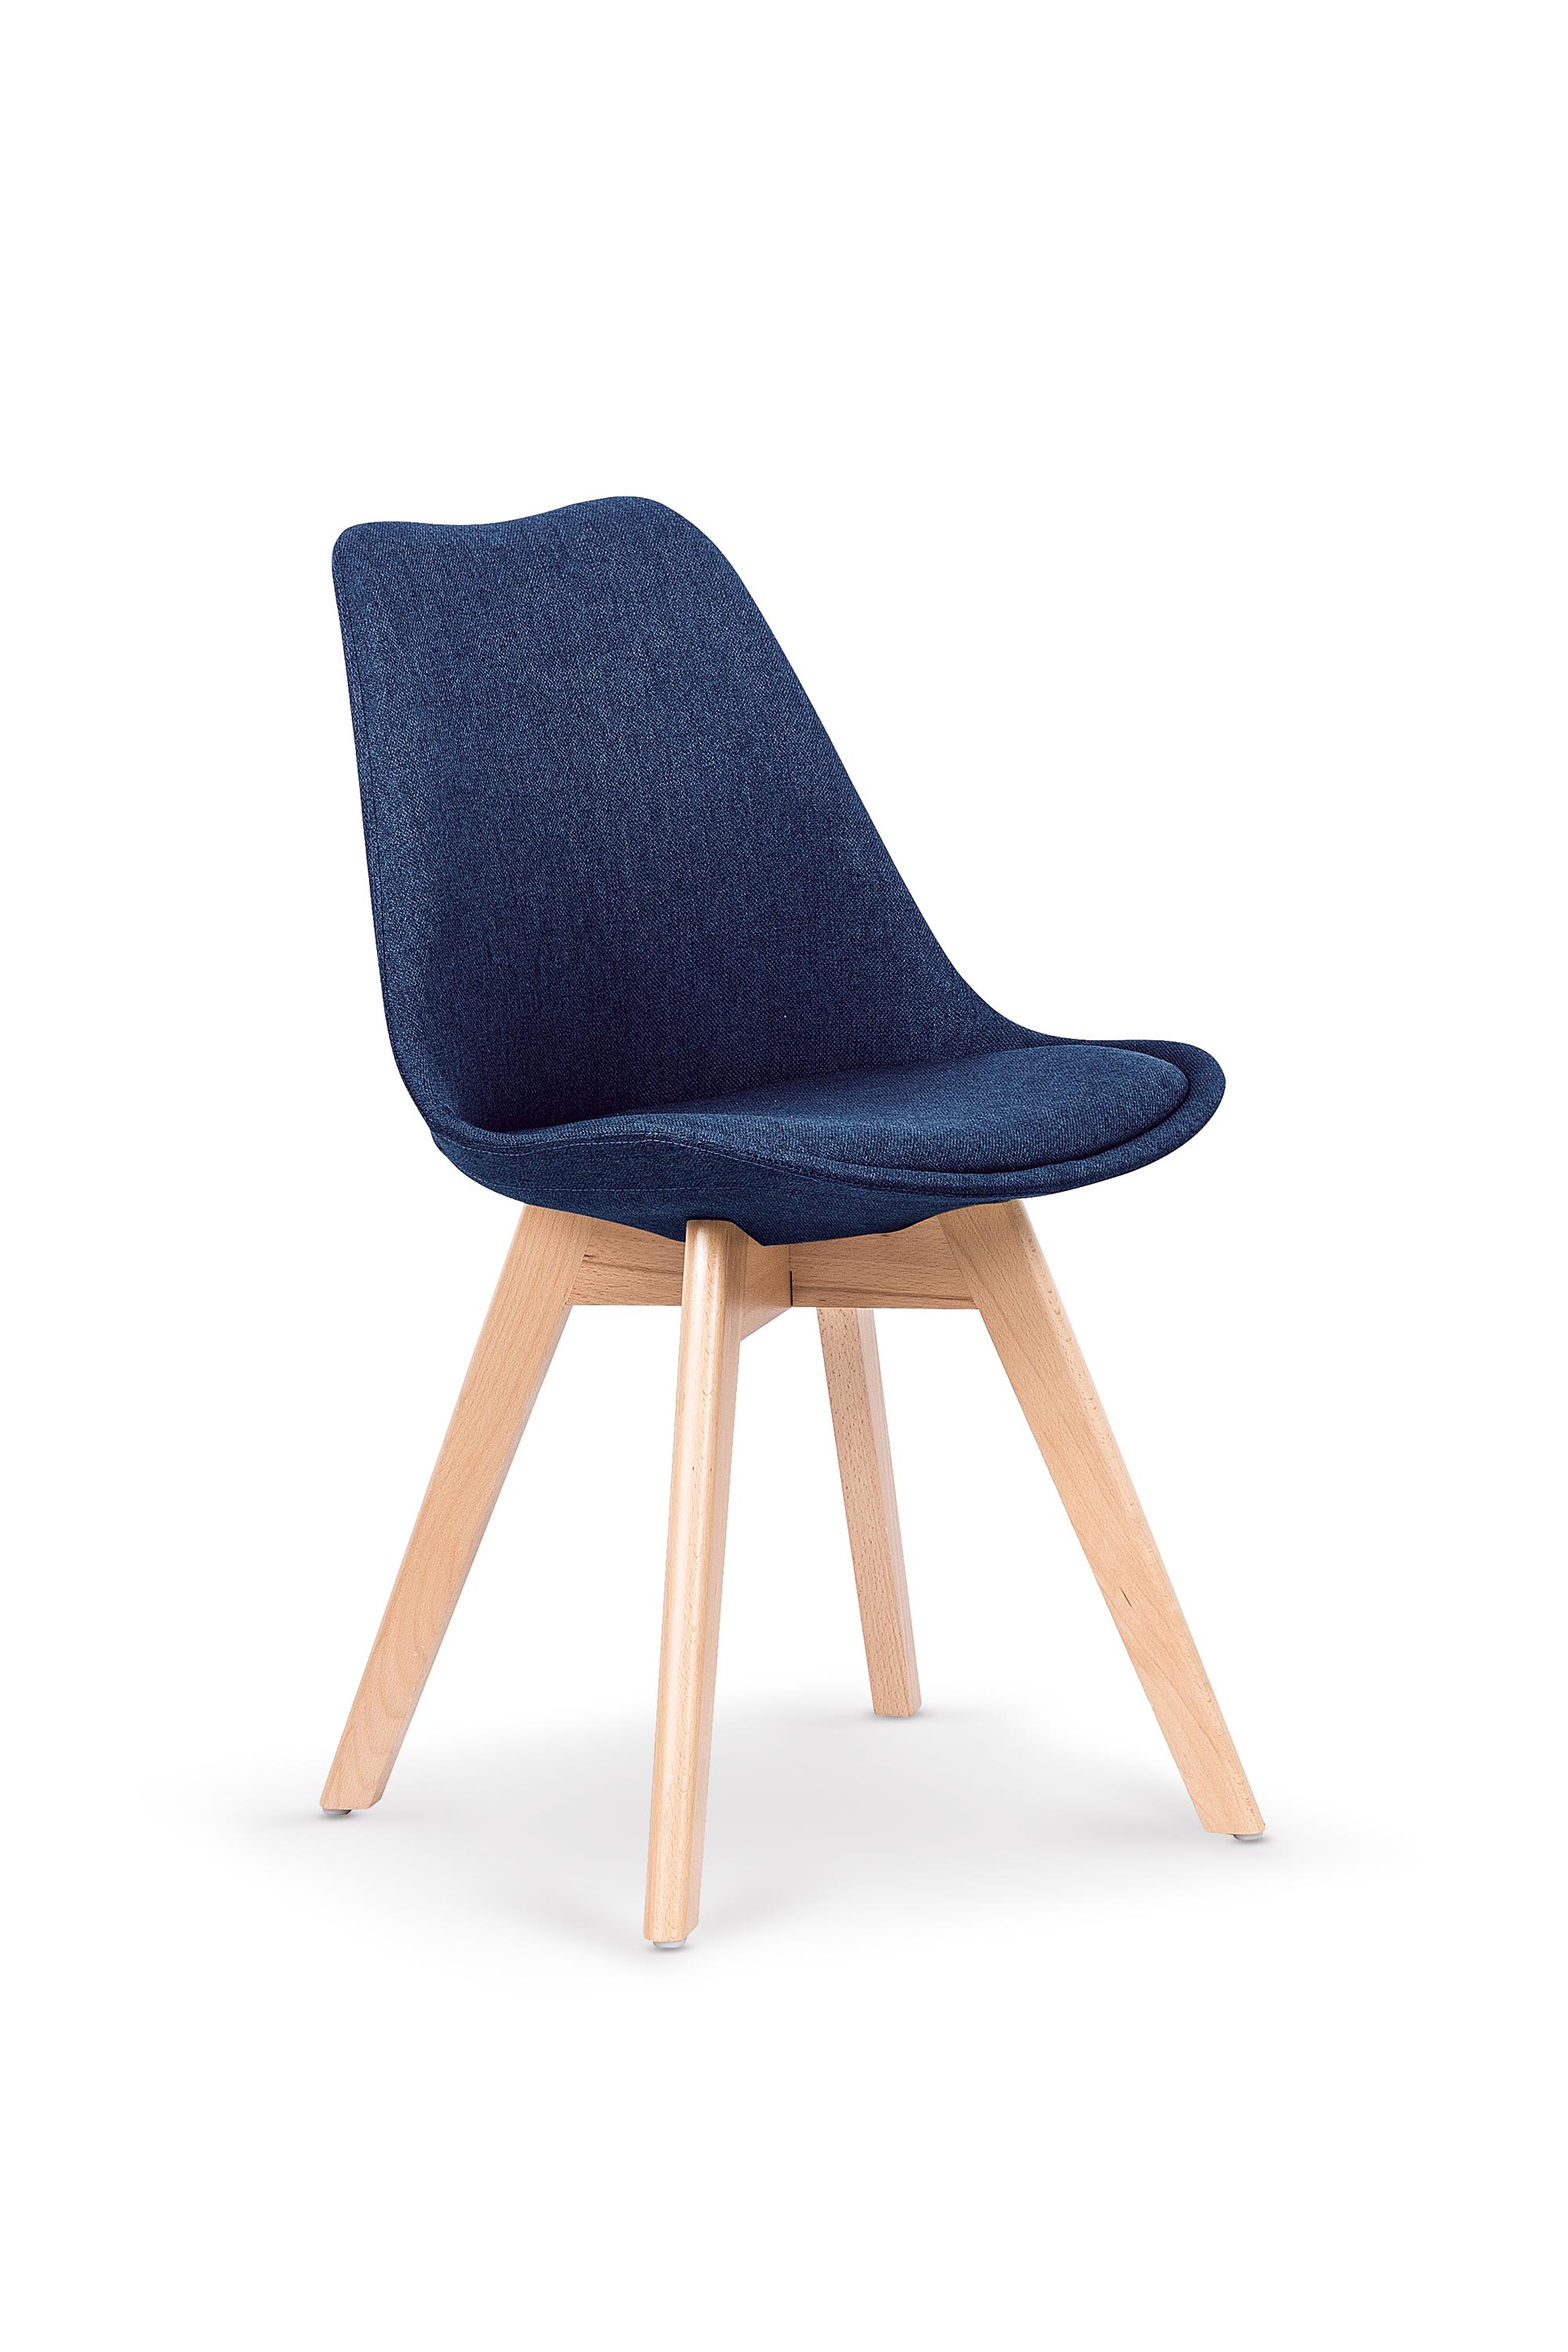 K303 krzesło ciemny niebieski / buk k303 krzesło ciemny niebieski / buk